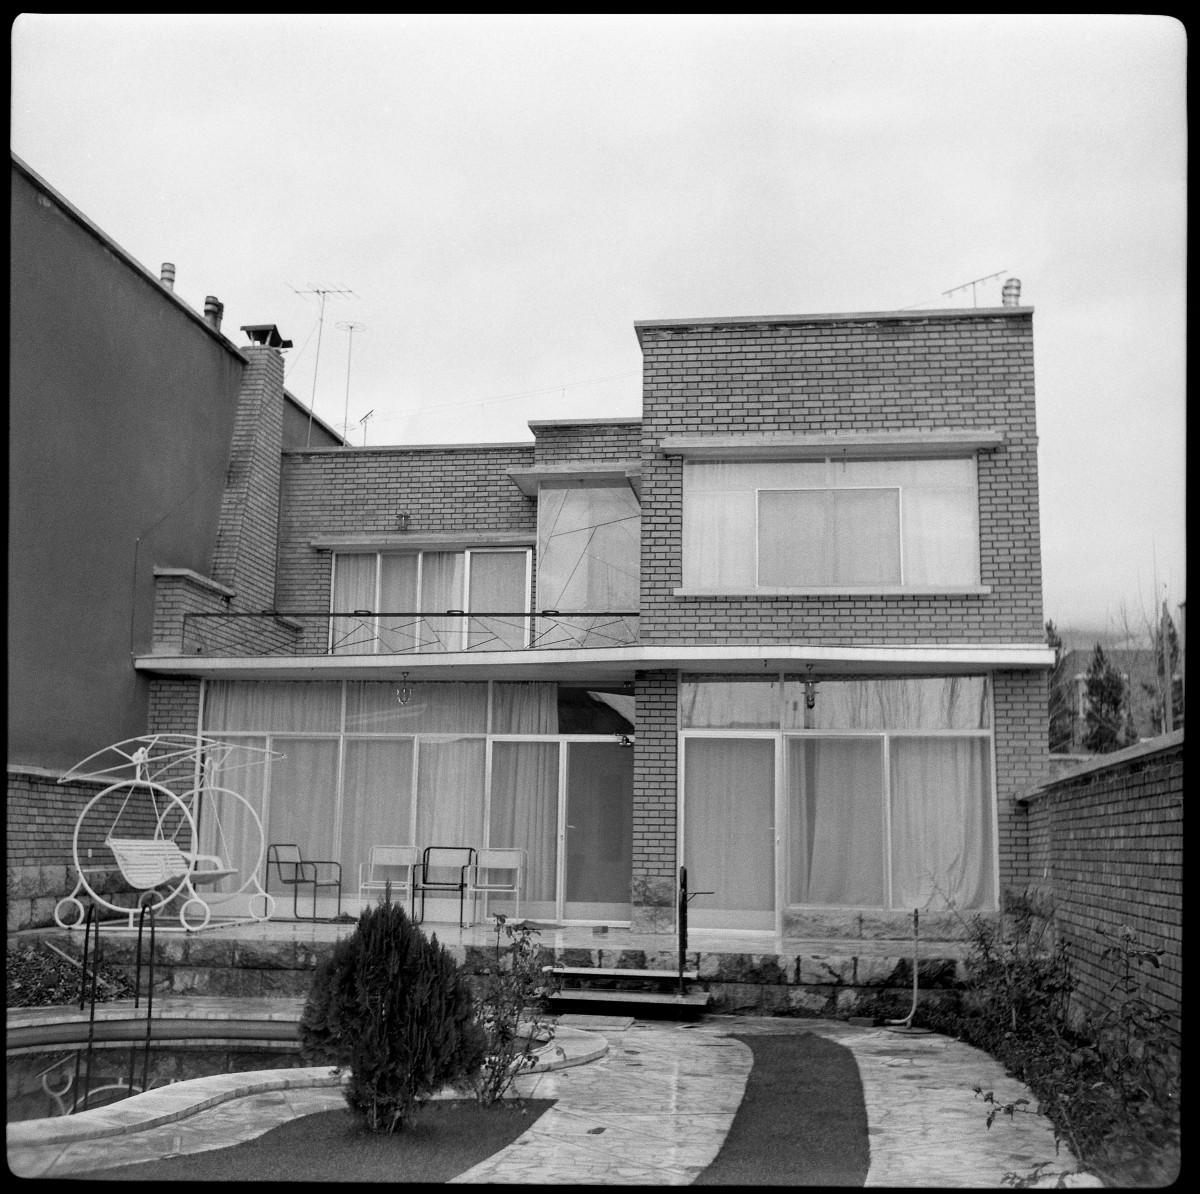 Sogol & Joubeen Studio. Portrait de la maison